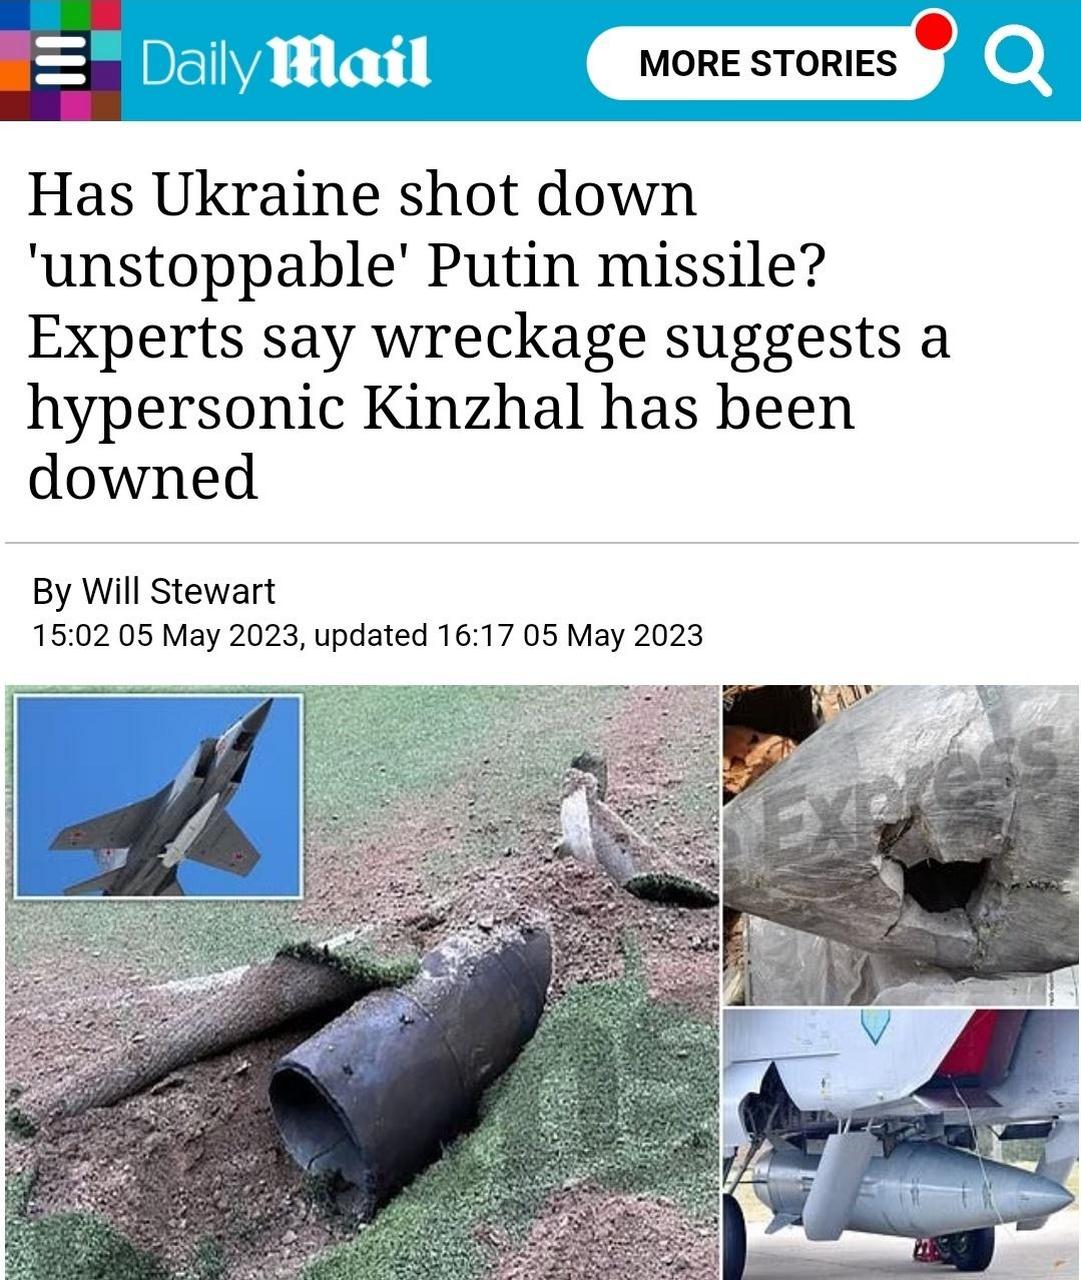 据消息称俄罗斯一枚匕首kinzhal(kh